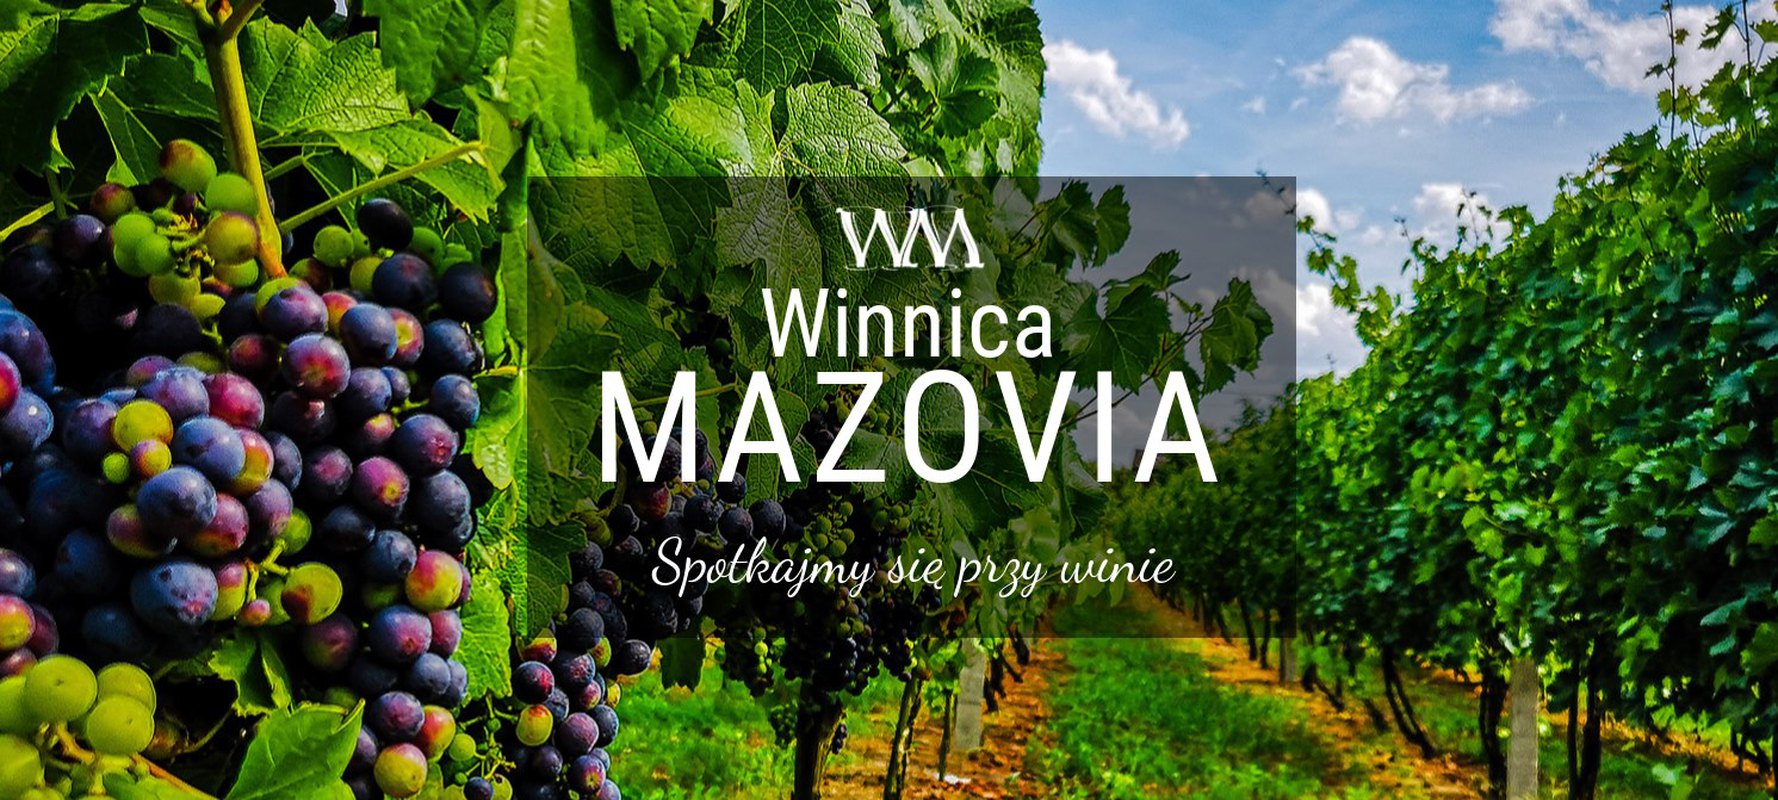 Majówka w winnicy Mazowia